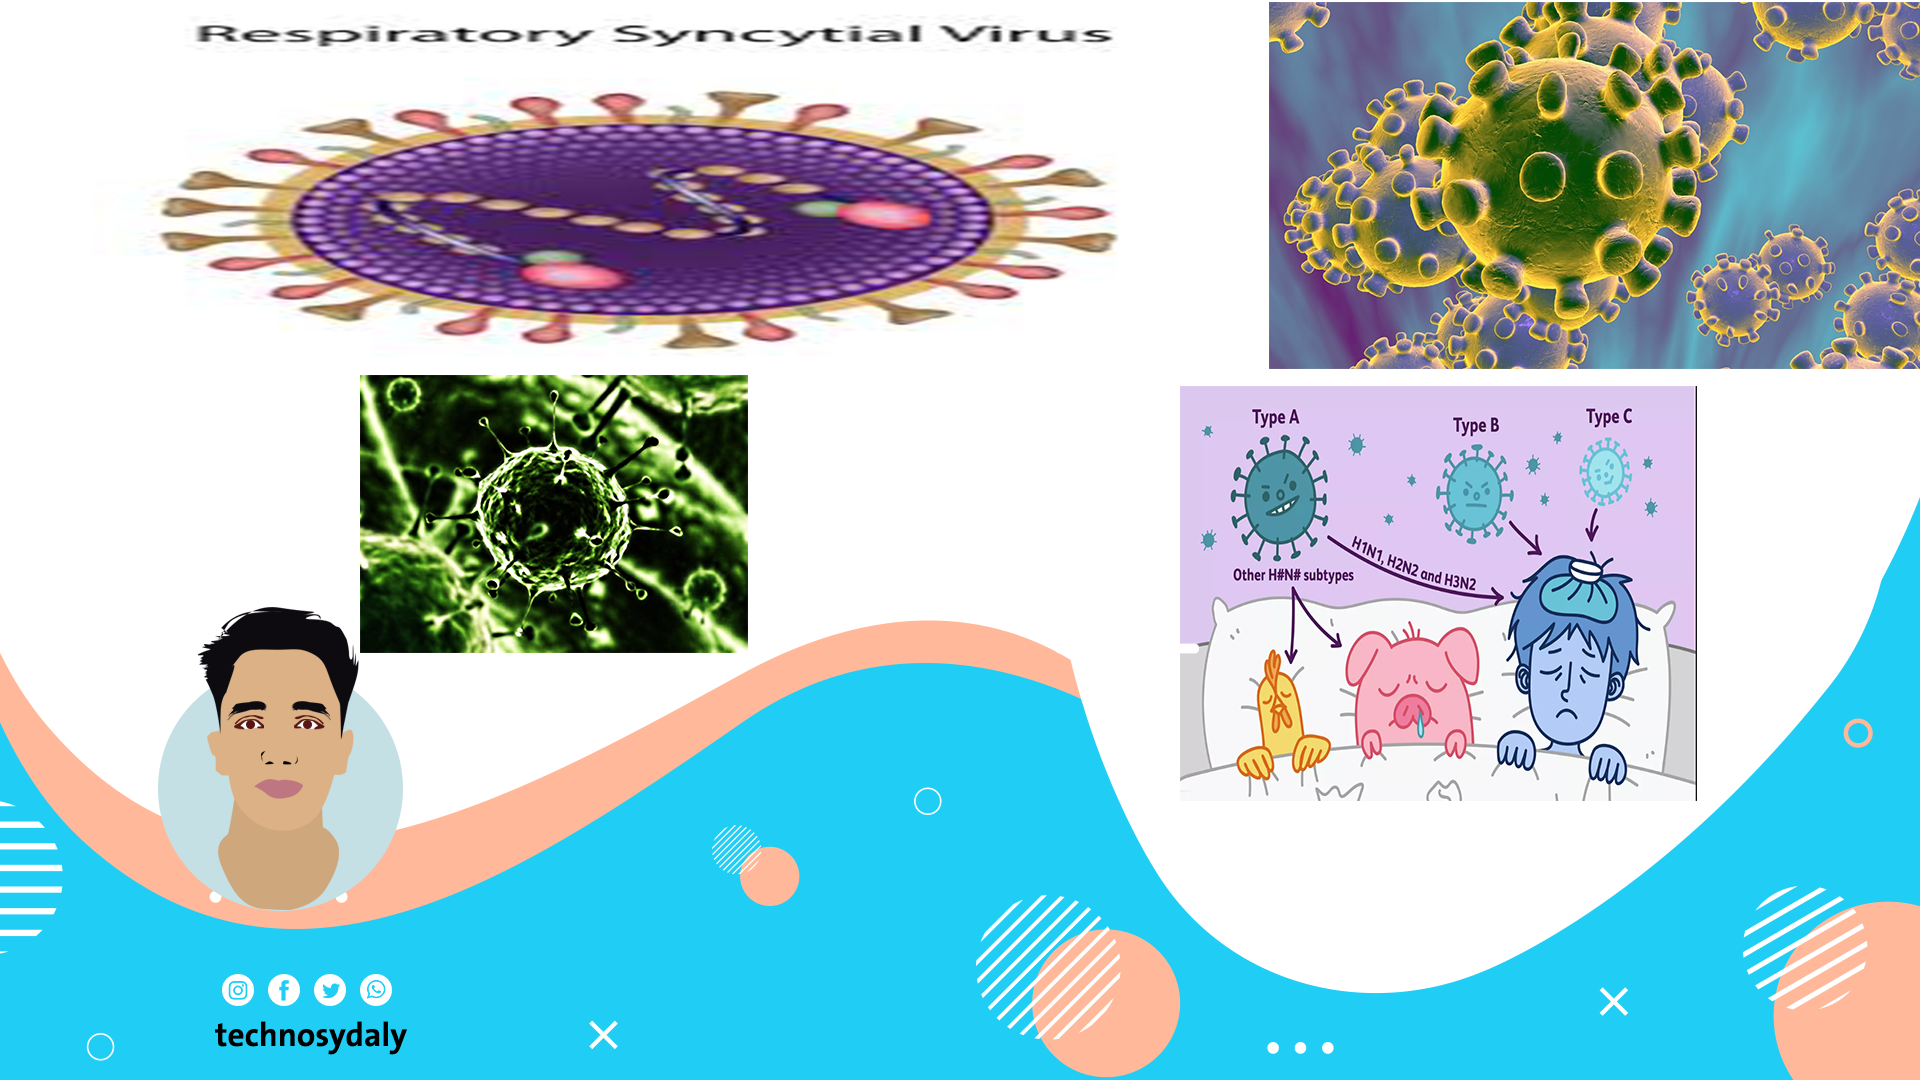 هذه صوره لبعض اشكال الفيروسات التي تصيب الجهاز التنفسي